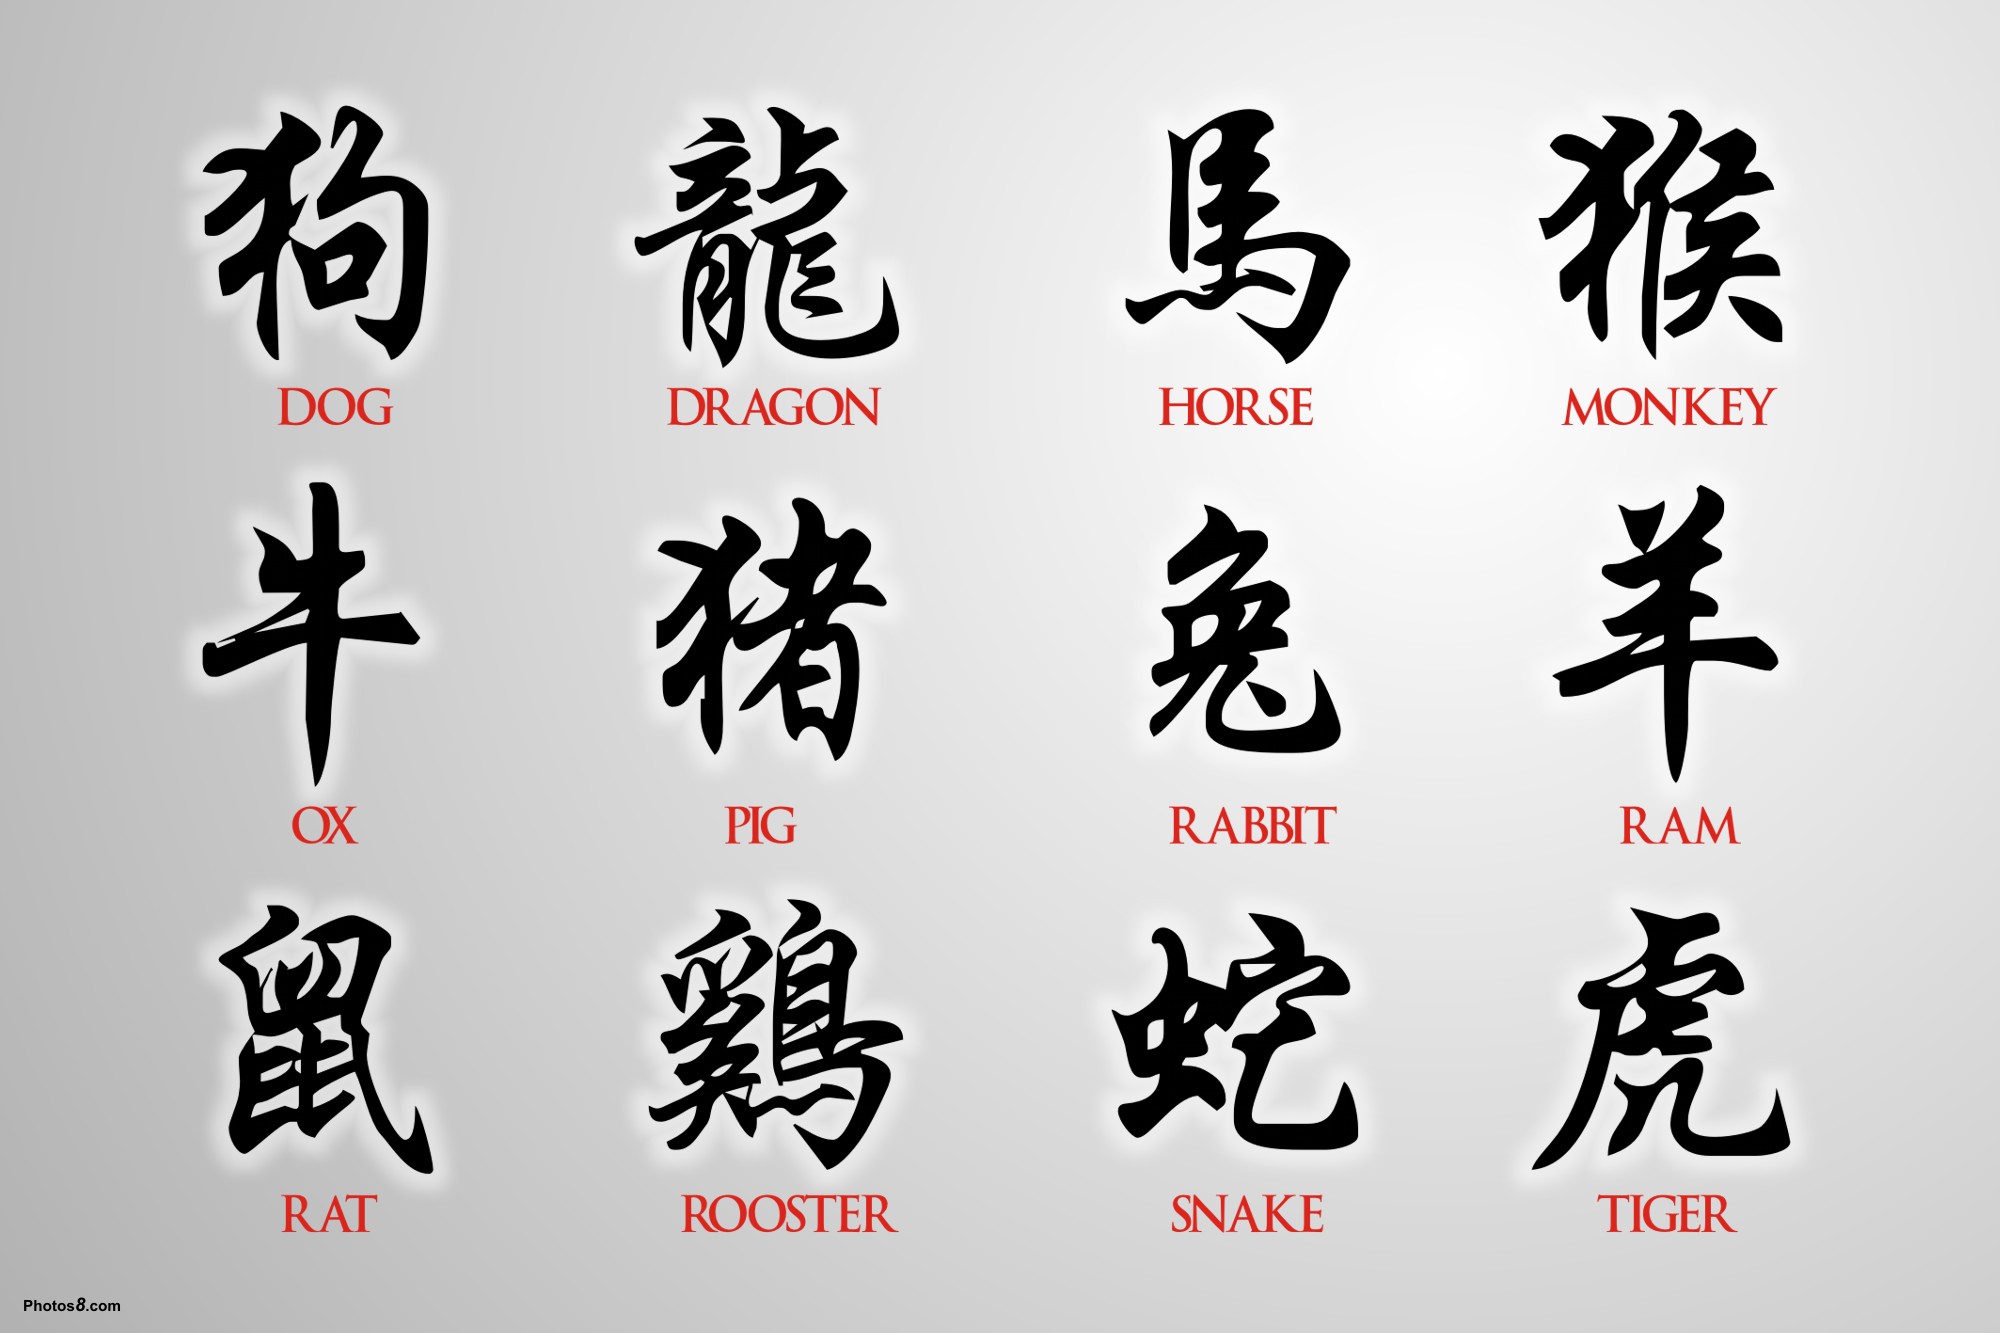 Японские символы с обозначением